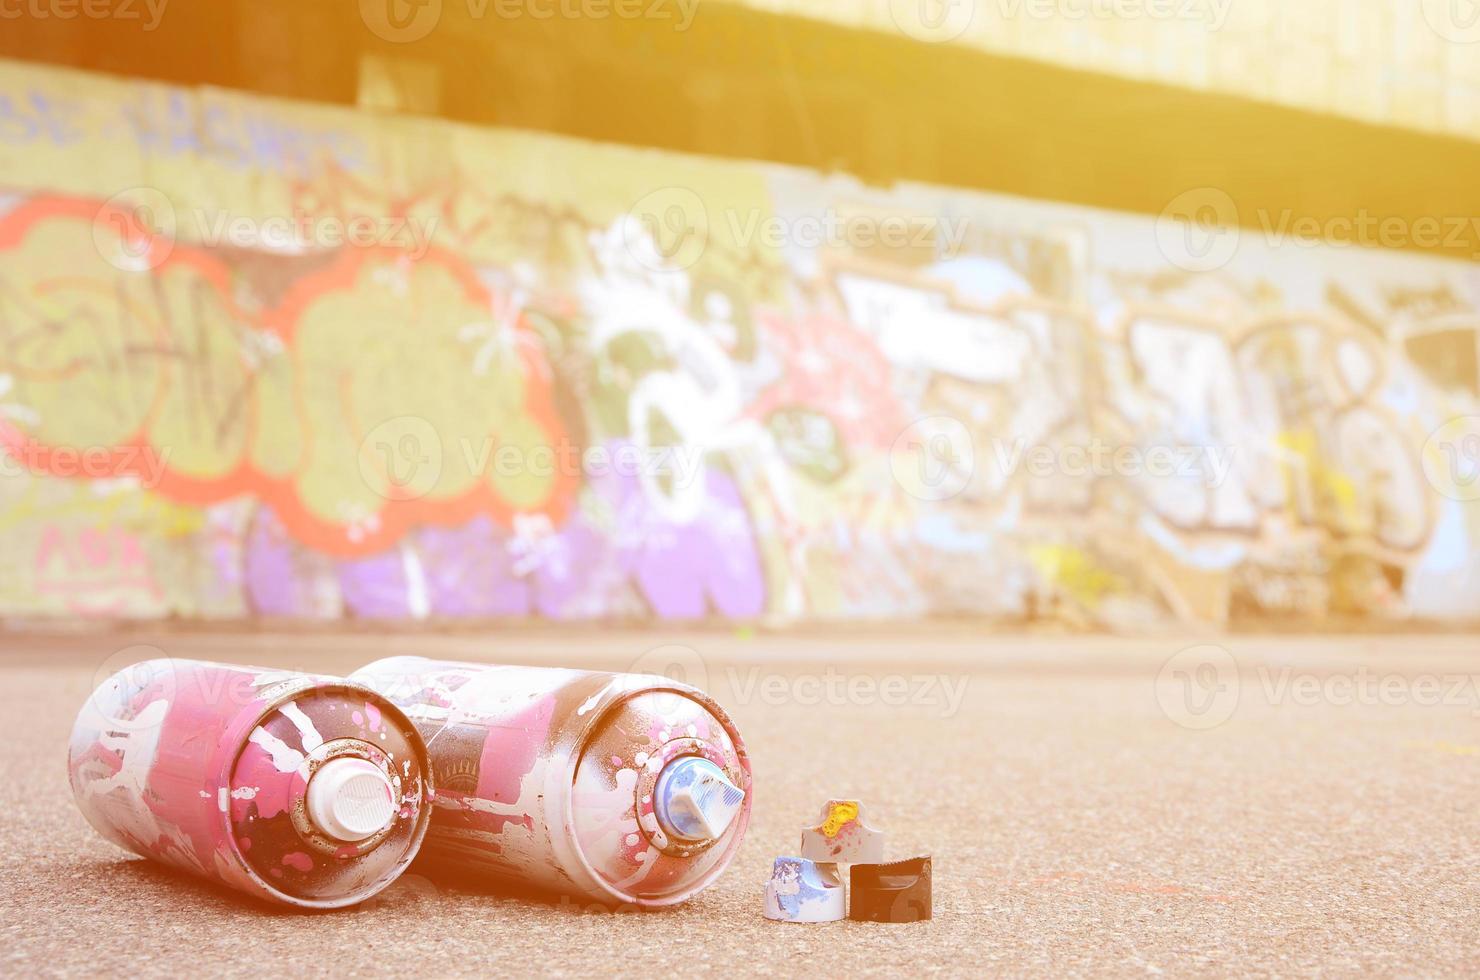 plusieurs bombes aérosols usagées avec de la peinture rose et blanche et des bouchons pour pulvériser de la peinture sous pression se trouvent sur l'asphalte près du mur peint dans des dessins de graffitis colorés photo